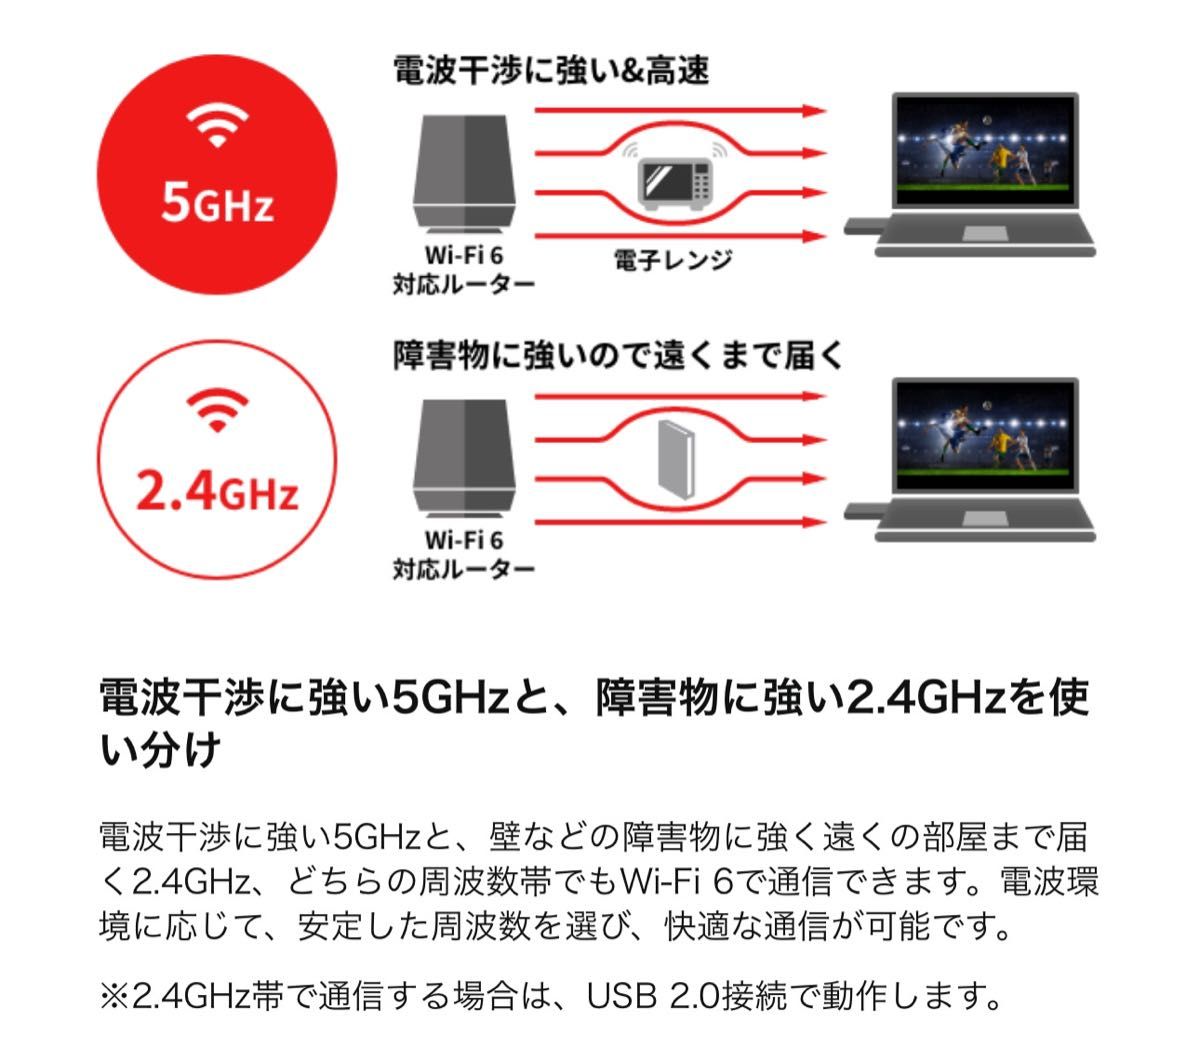 美品★パソコンを最新規格「Wi-Fi 6(11ax)」にアップグレード USB端子に装着して高速化★WI-U3-1200AX2